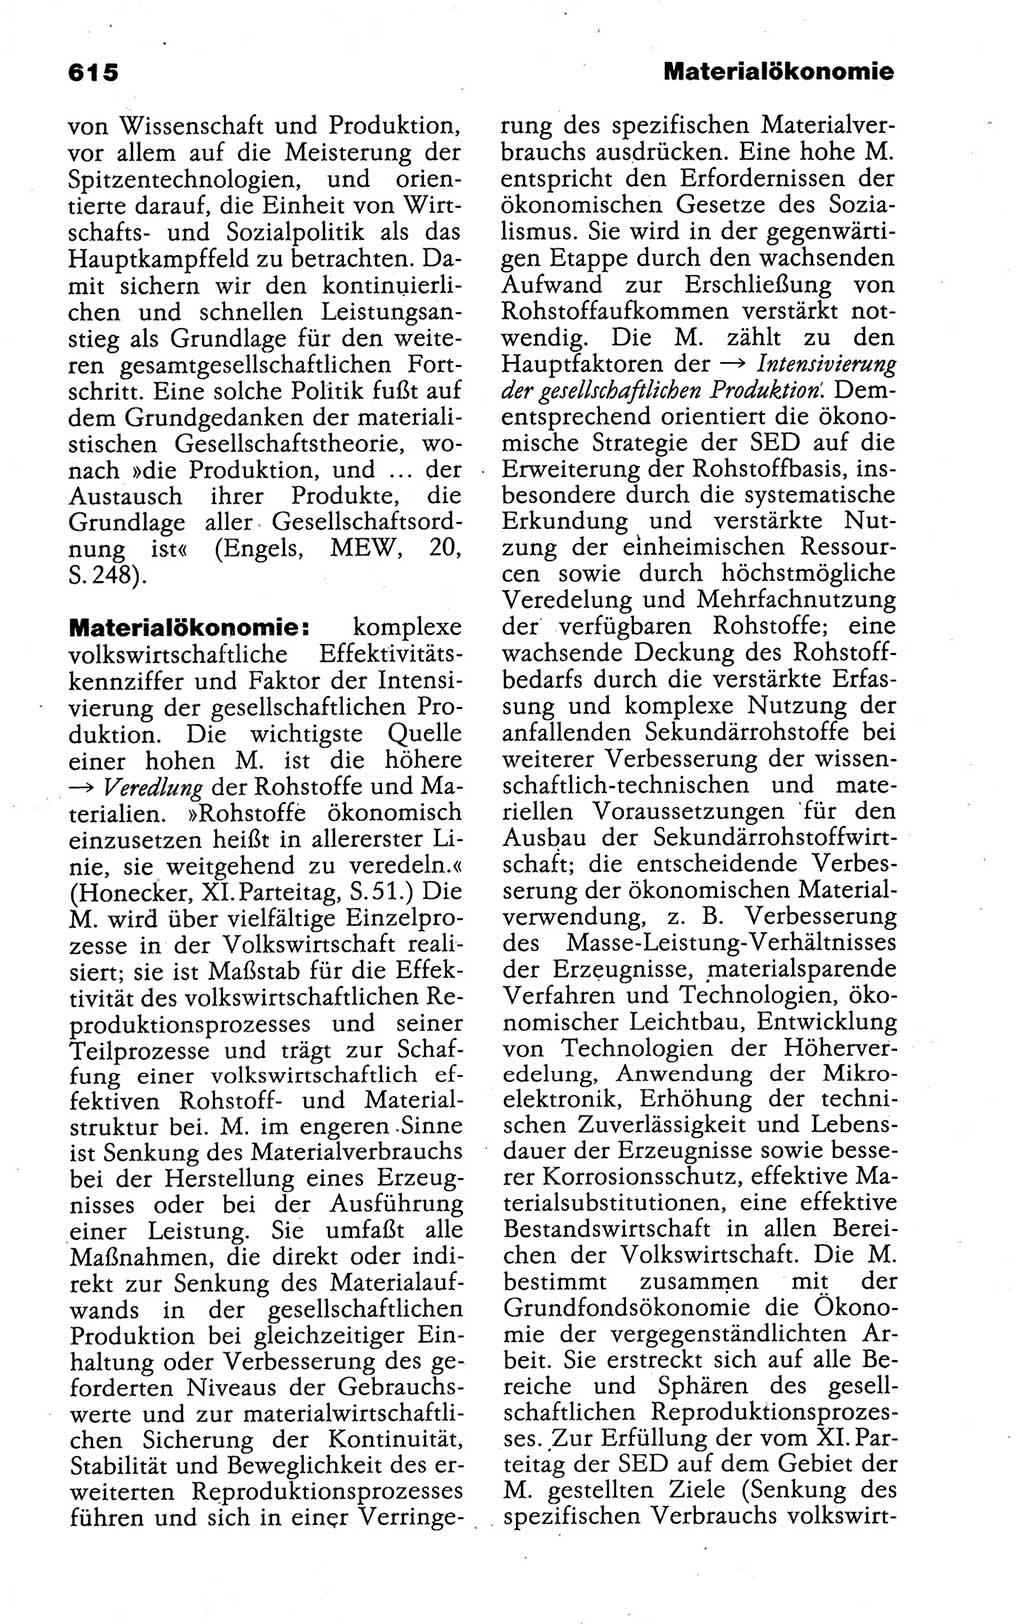 Kleines politisches Wörterbuch [Deutsche Demokratische Republik (DDR)] 1988, Seite 615 (Kl. pol. Wb. DDR 1988, S. 615)